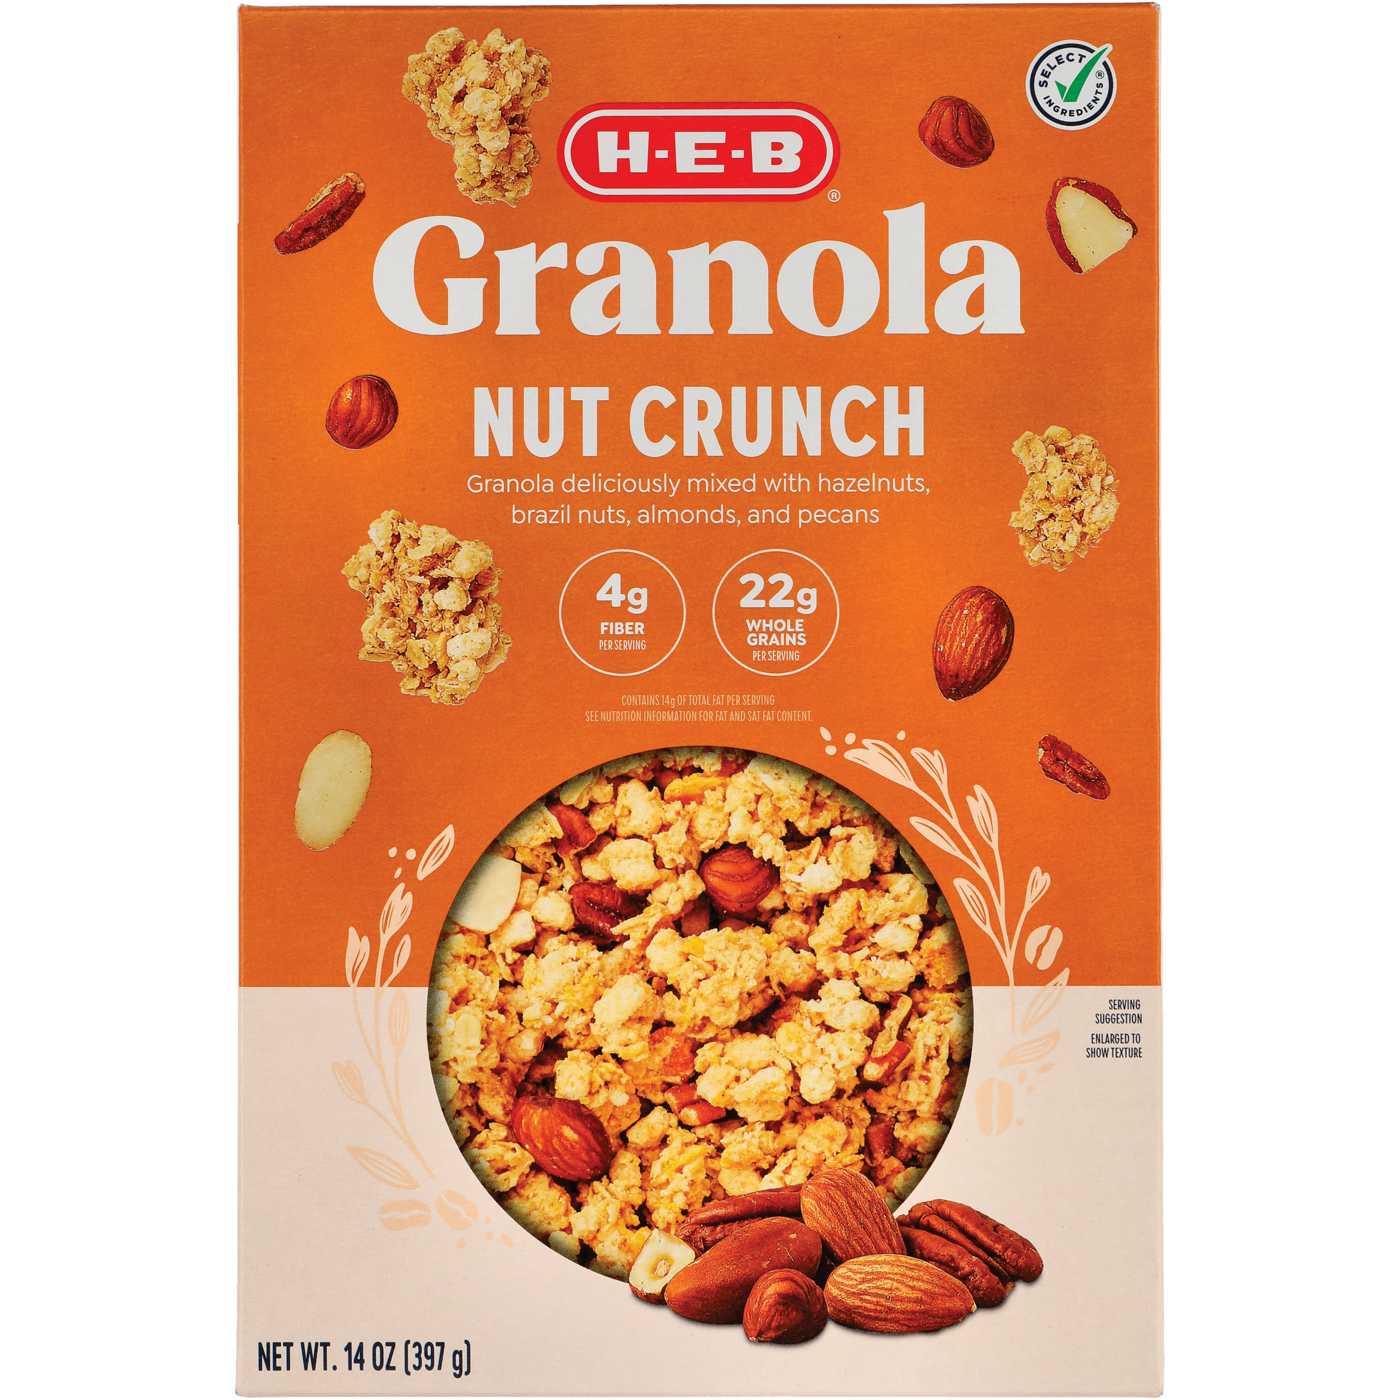 H-E-B Nut Crunch Granola; image 1 of 2